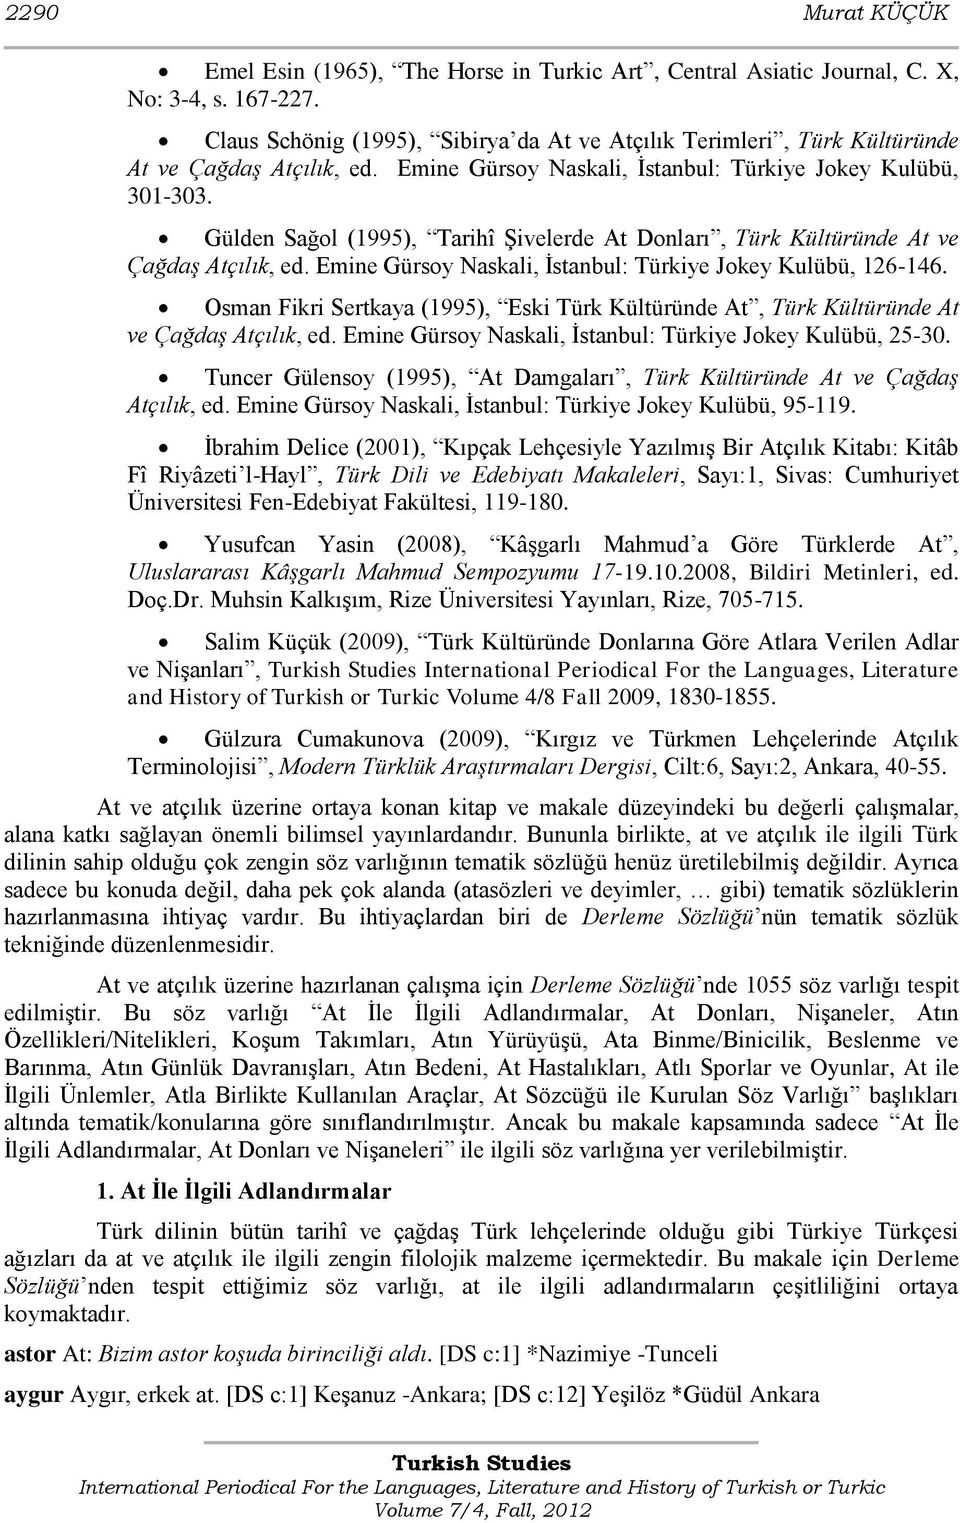 Gülden Sağol (1995), Tarihî ġivelerde At Donları, Türk Kültüründe At ve Çağdaş Atçılık, ed. Emine Gürsoy Naskali, Ġstanbul: Türkiye Jokey Kulübü, 126-146.